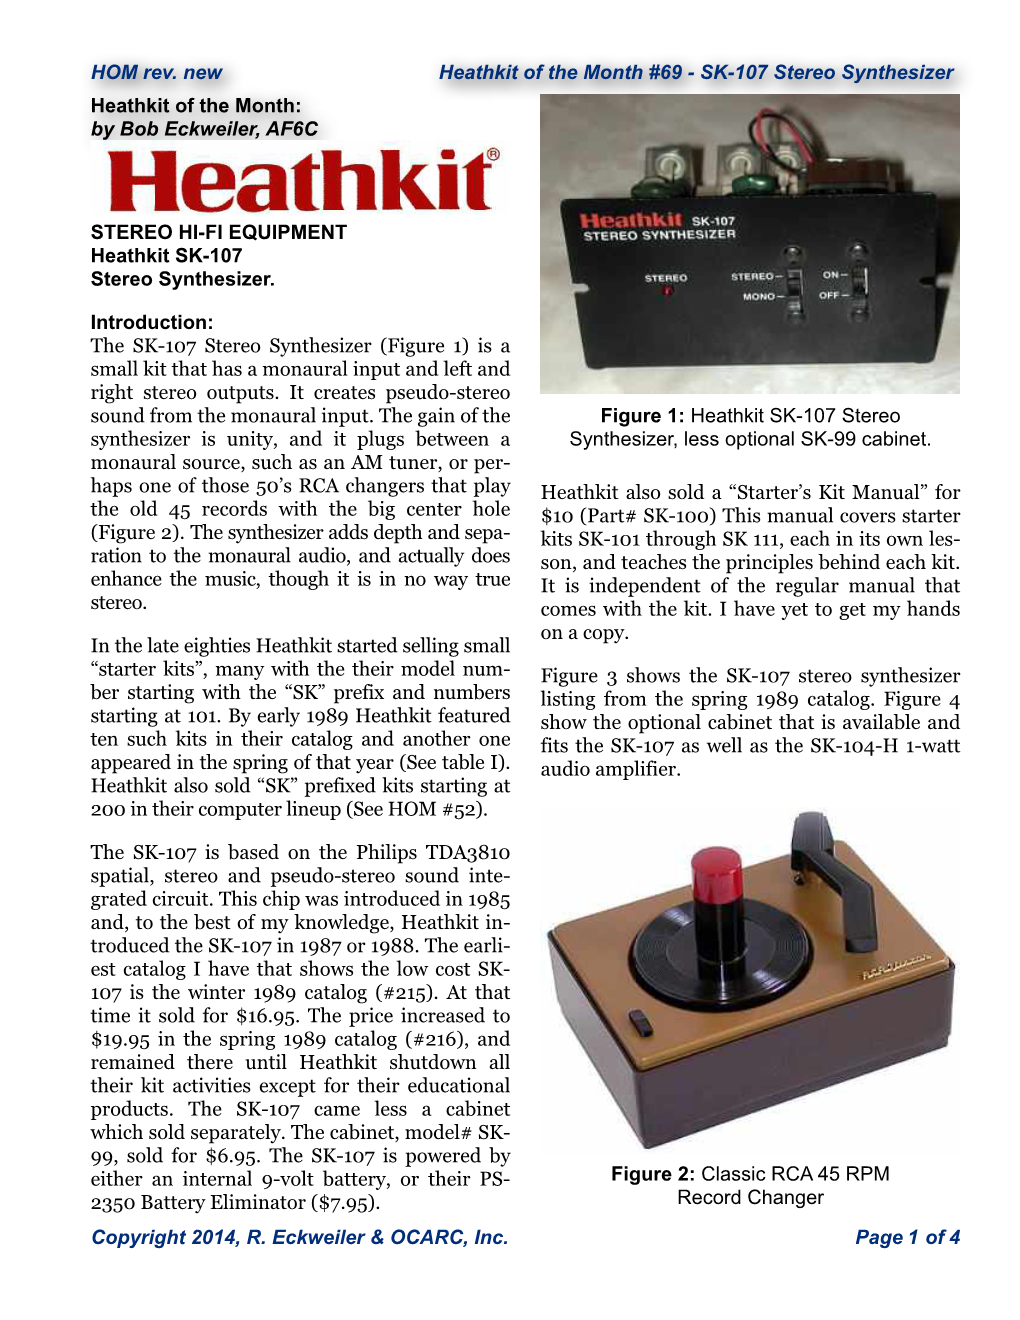 Heathkit SK-107 Stereo Synthesizer